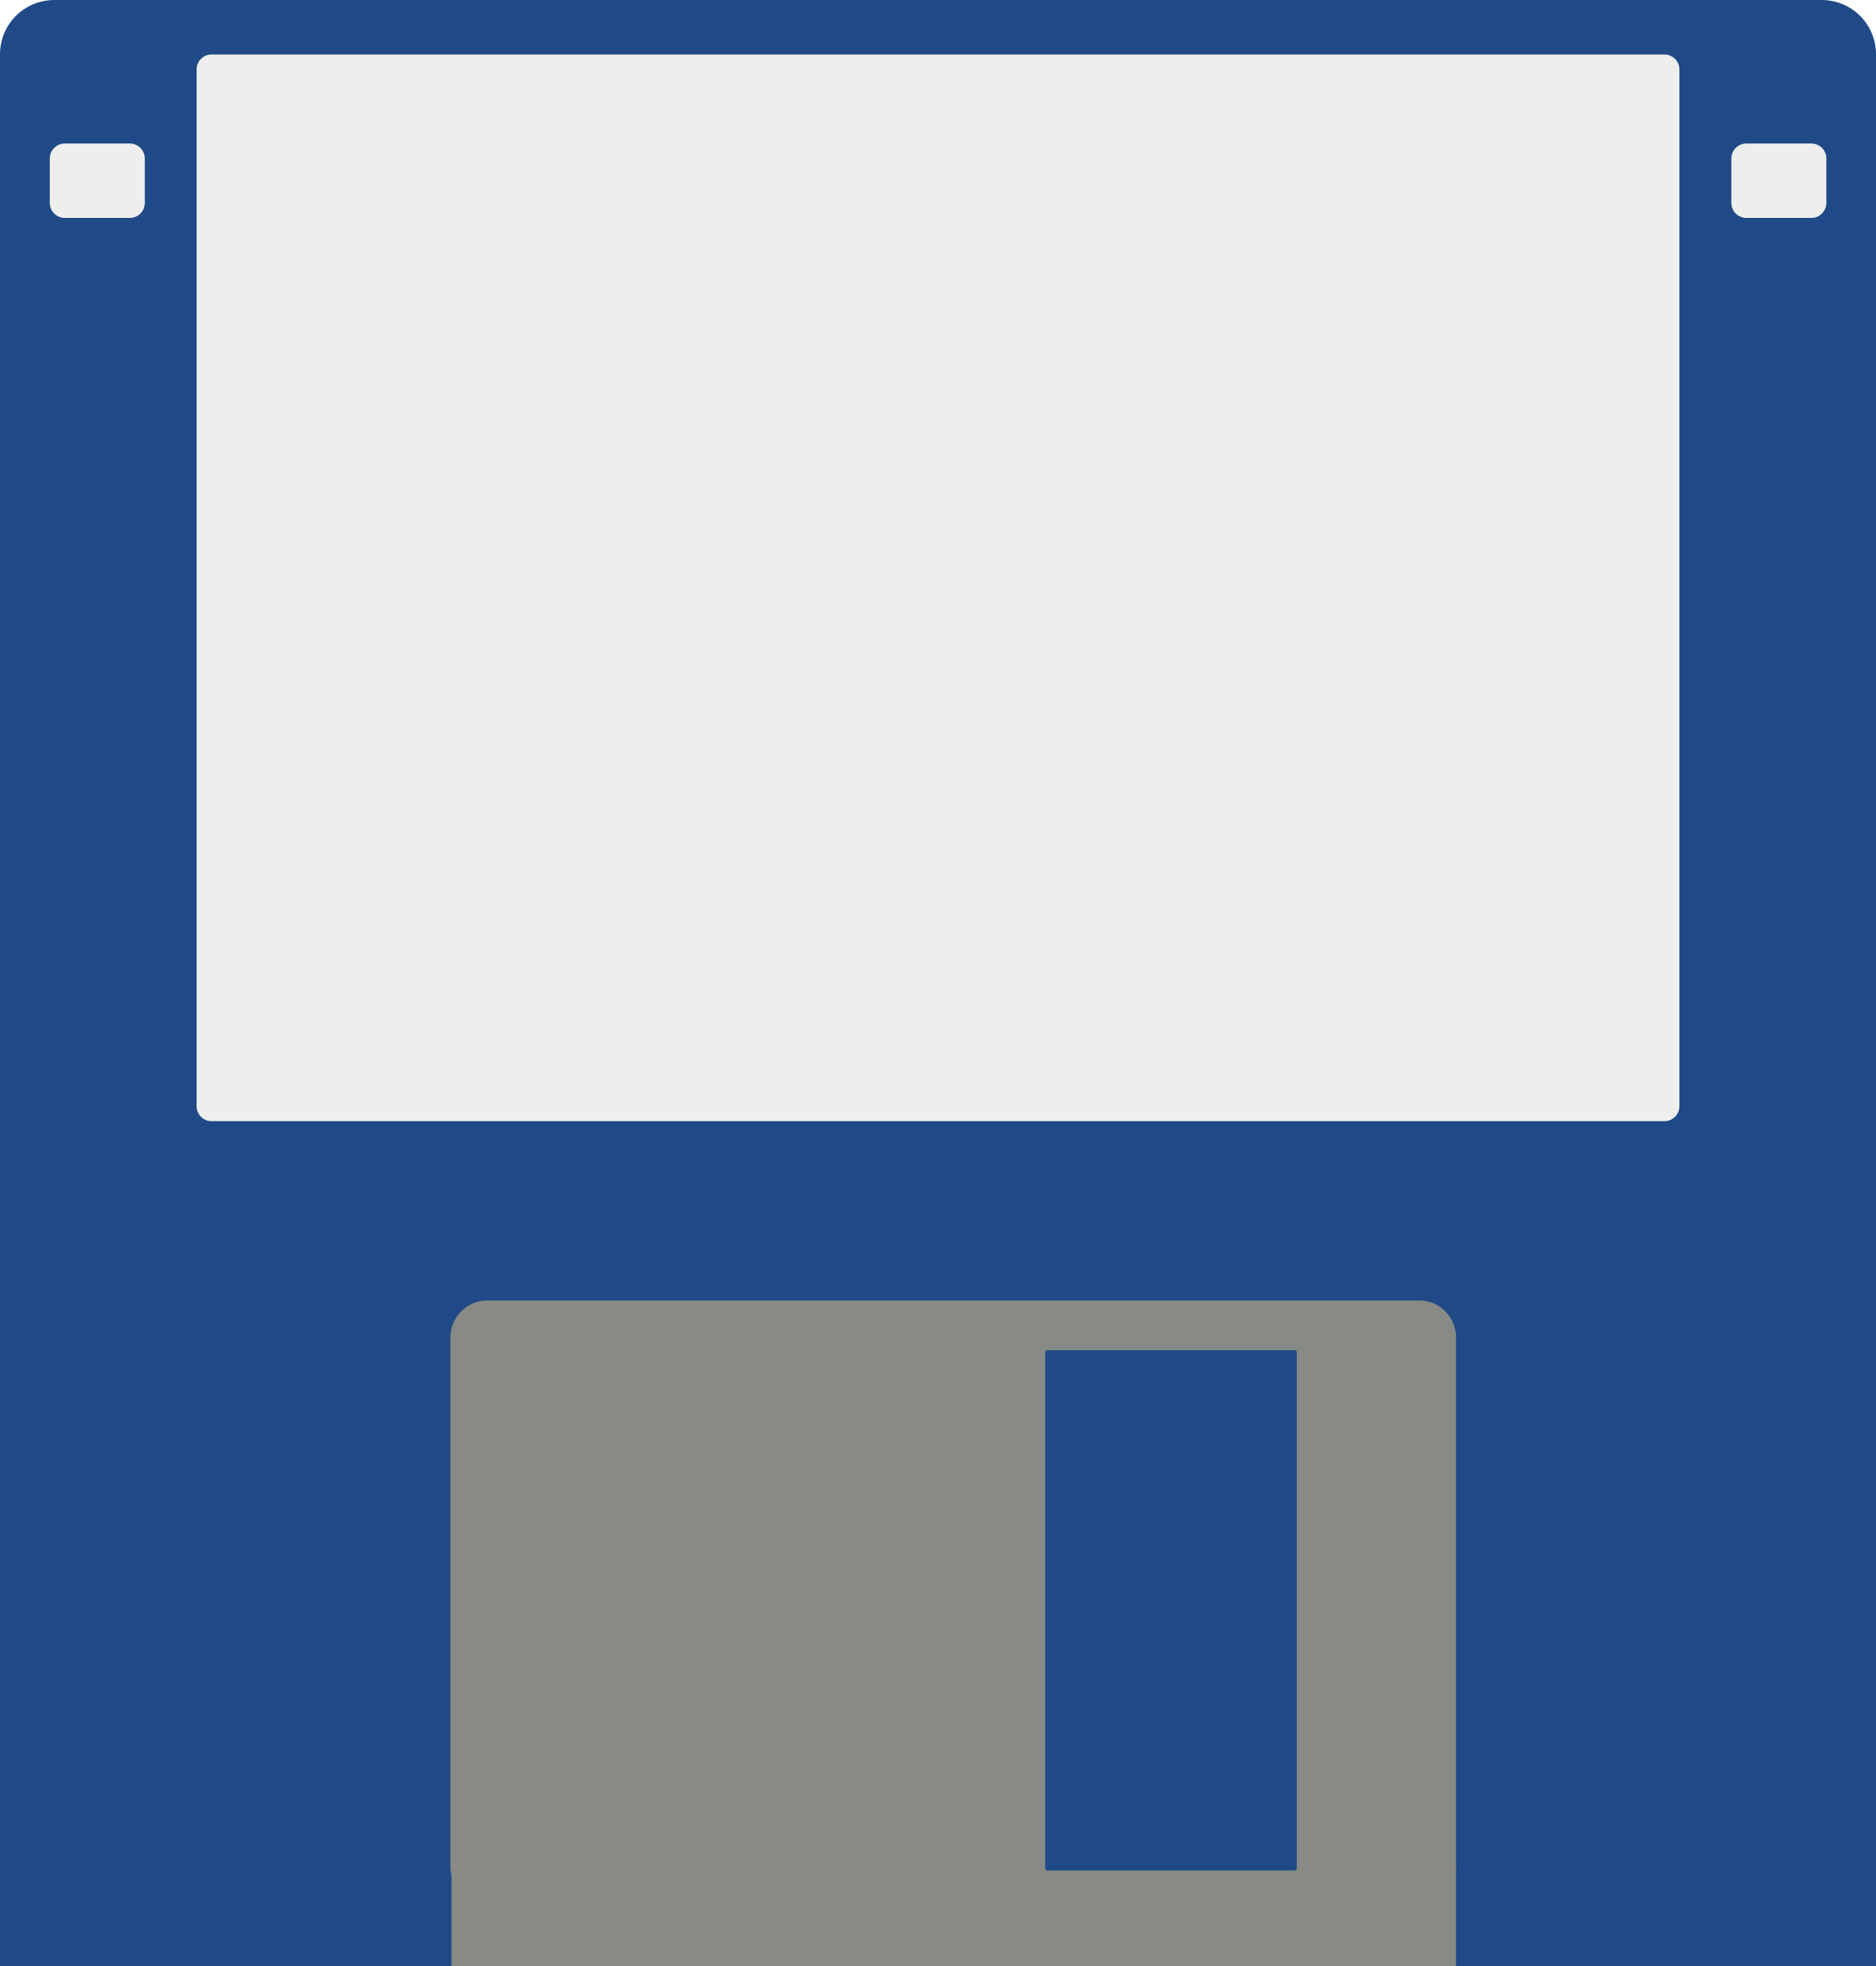 Floppy Disk By Vorre